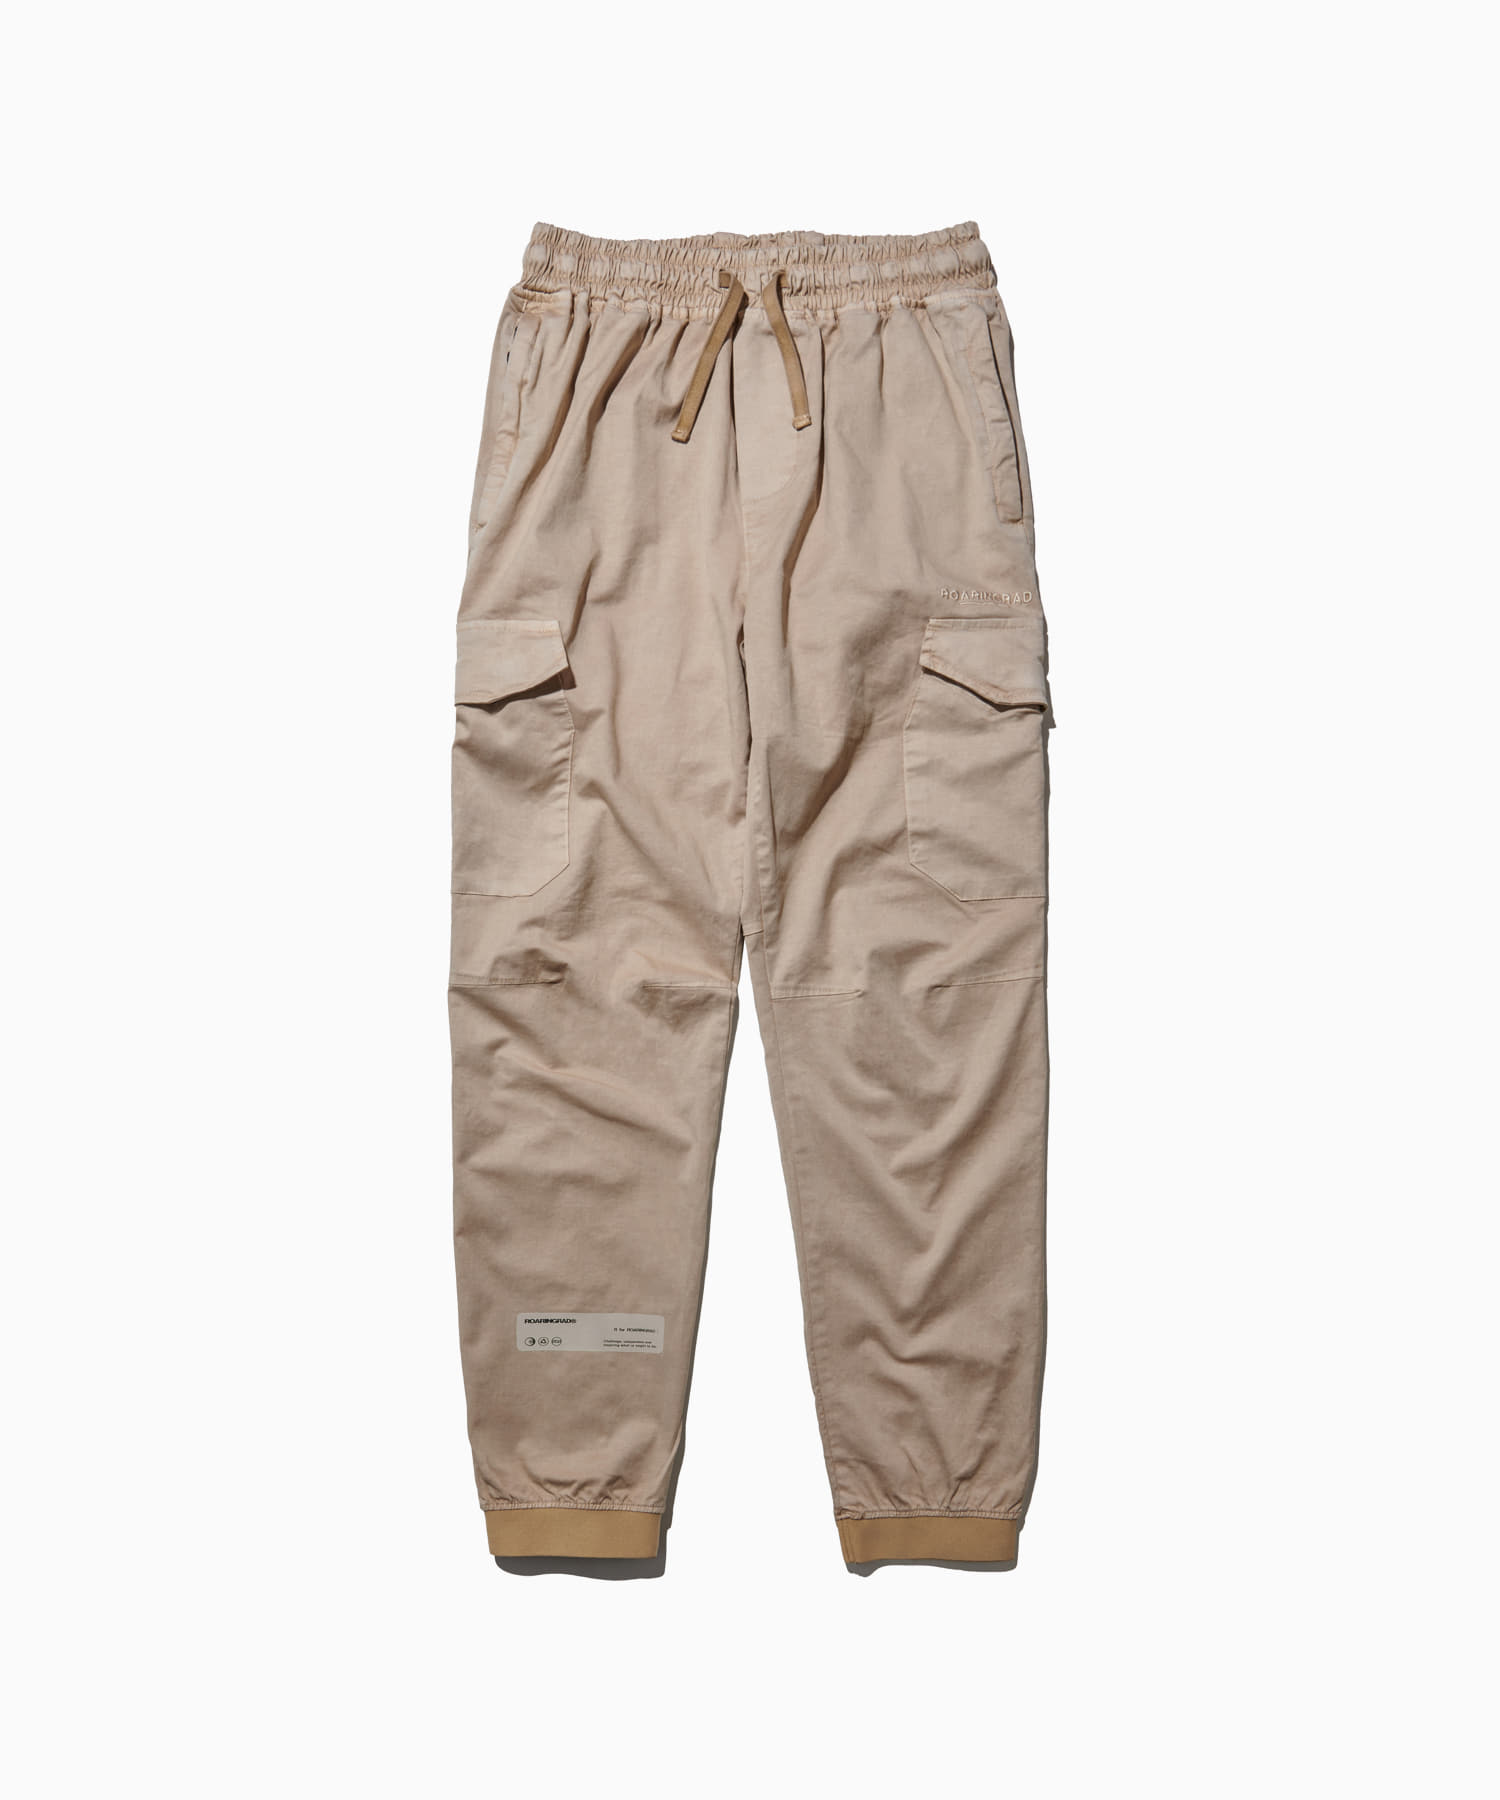 pigment cago jogger pants beige - 로어링라드(ROARINGRAD)